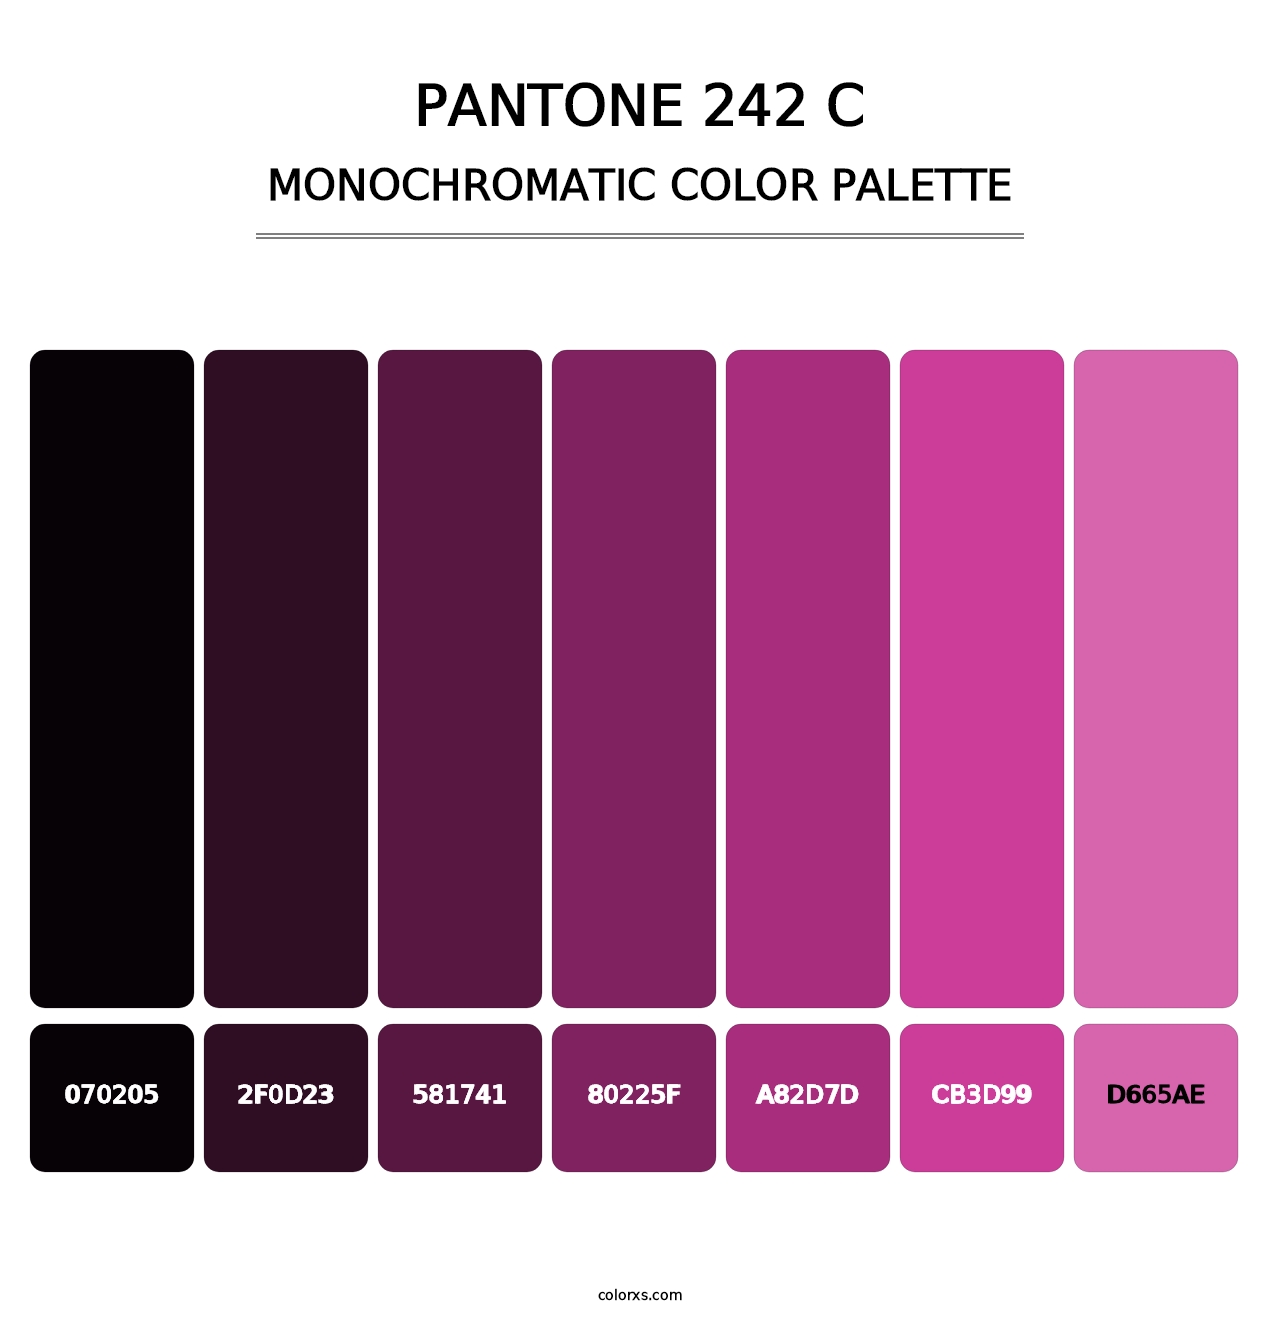 PANTONE 242 C - Monochromatic Color Palette